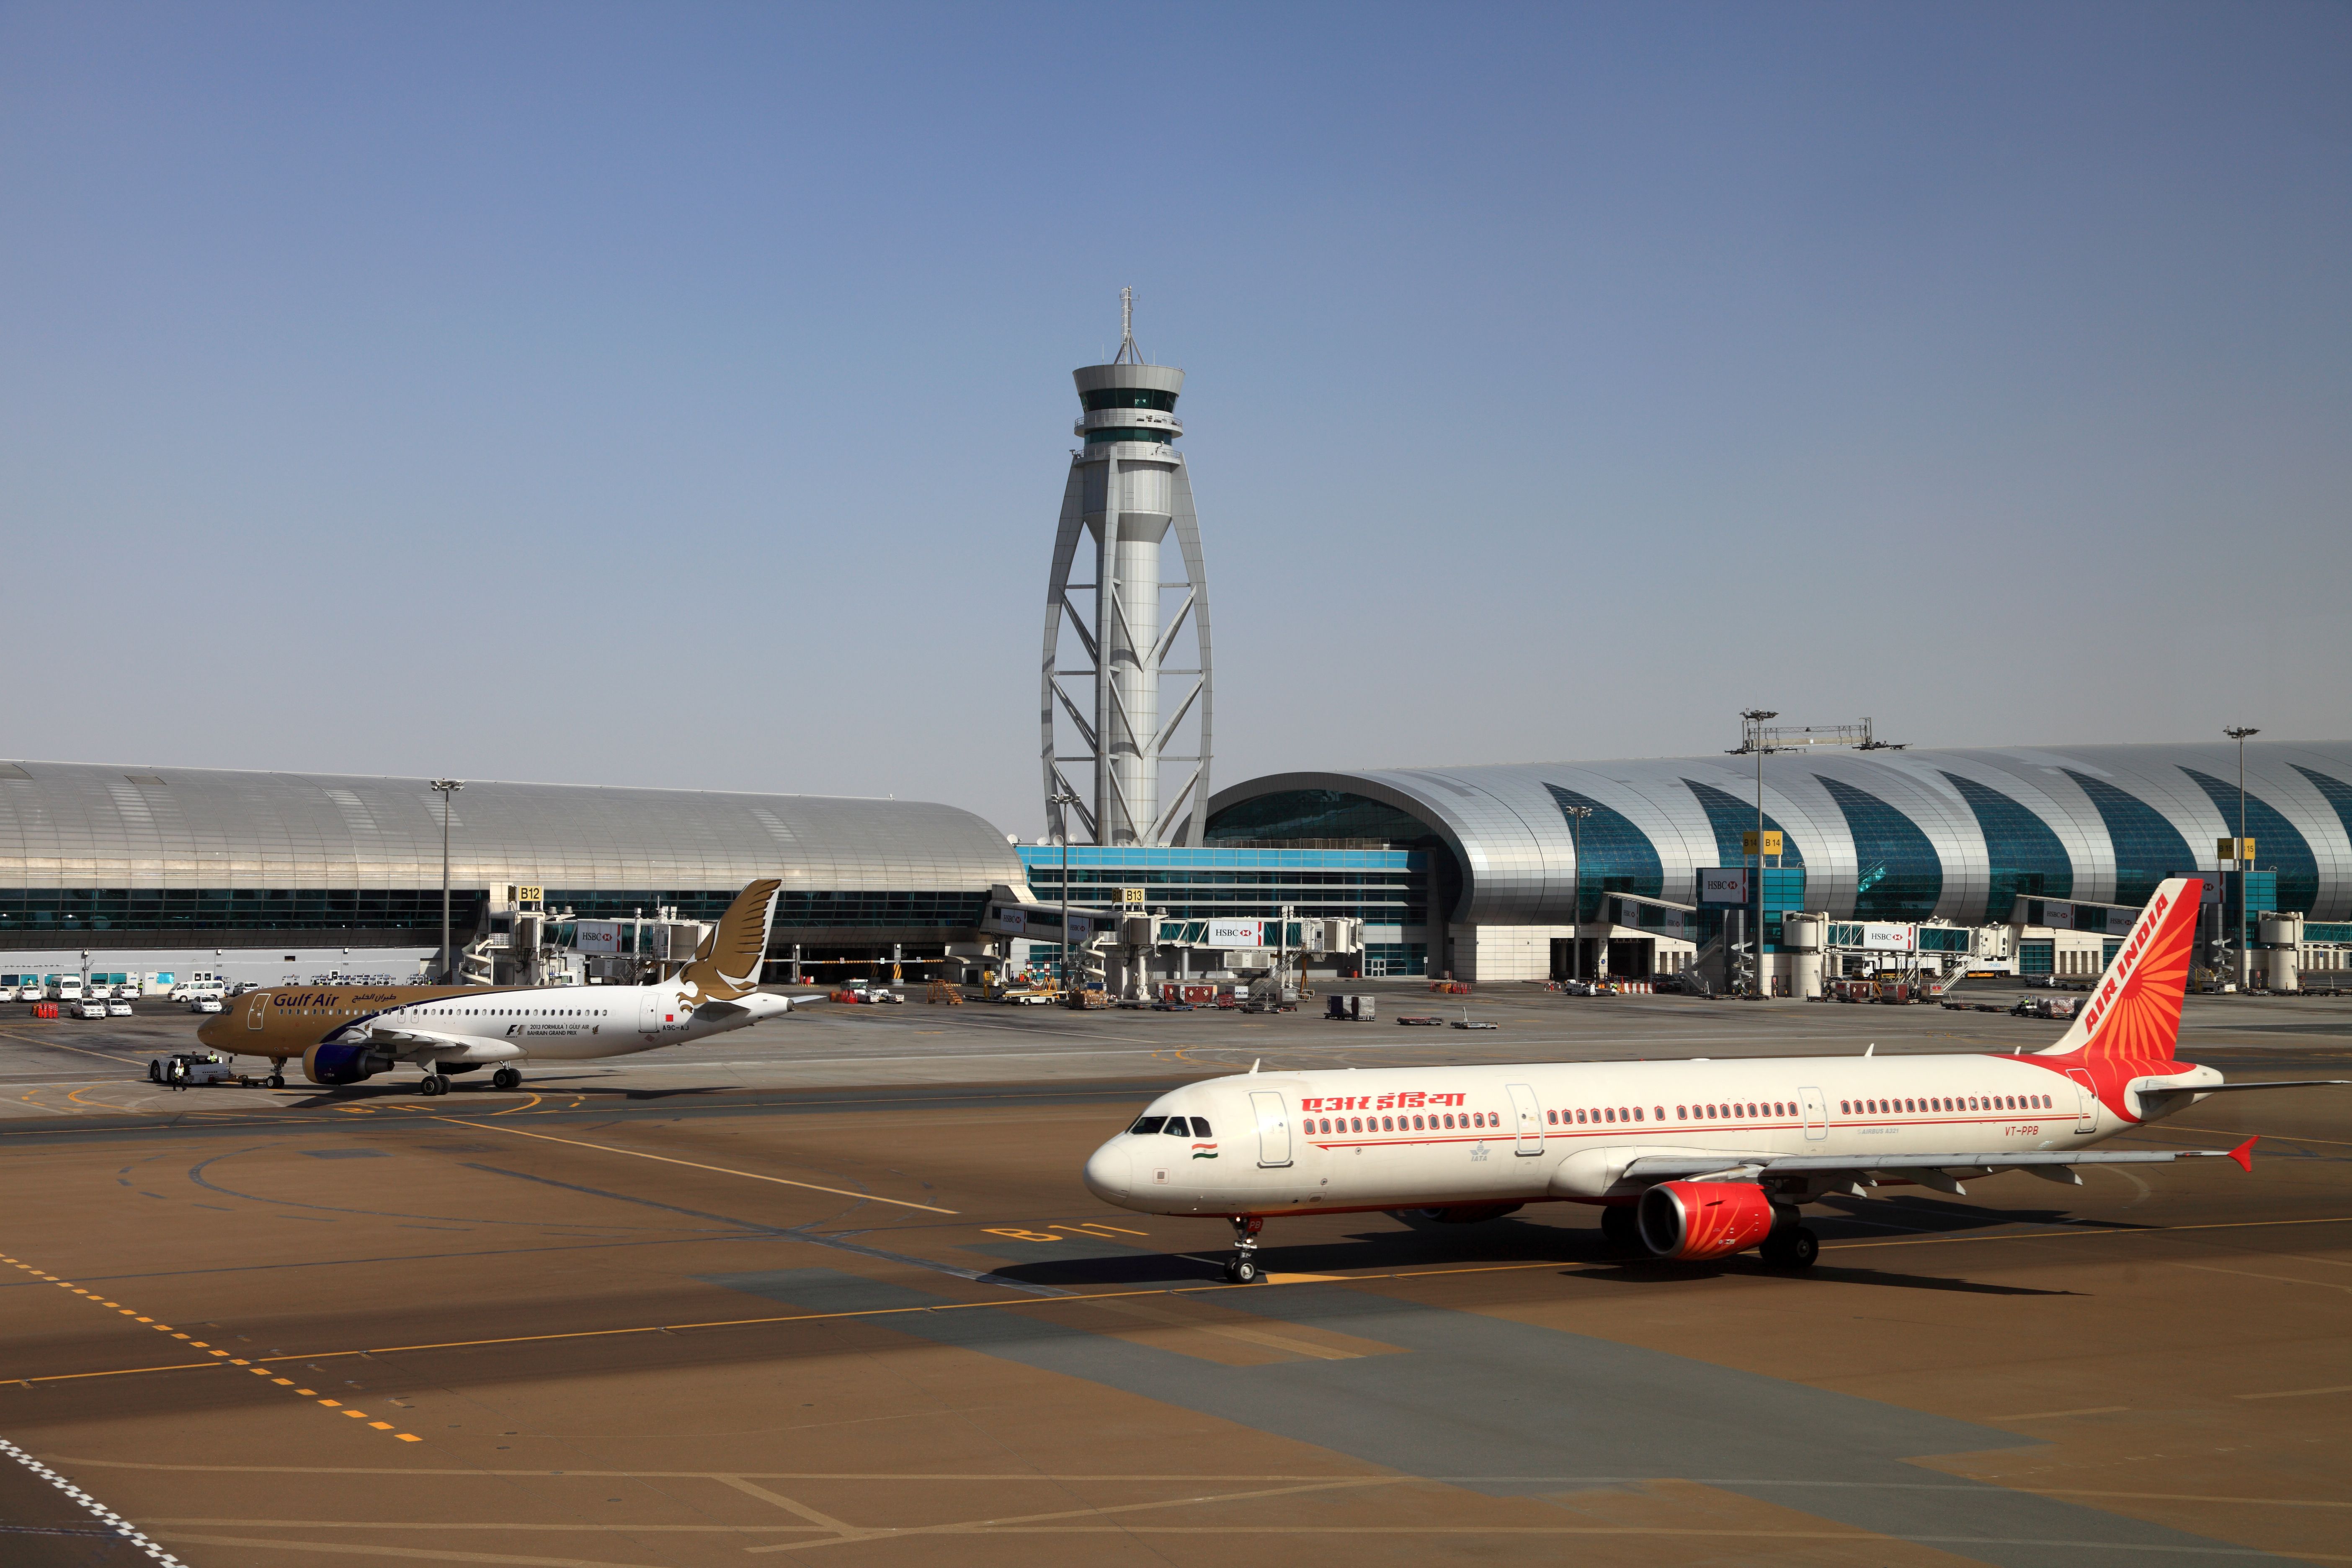 An Air India Airbus A321 and Gulf Air A320 on the apron At Dubai International Airport.